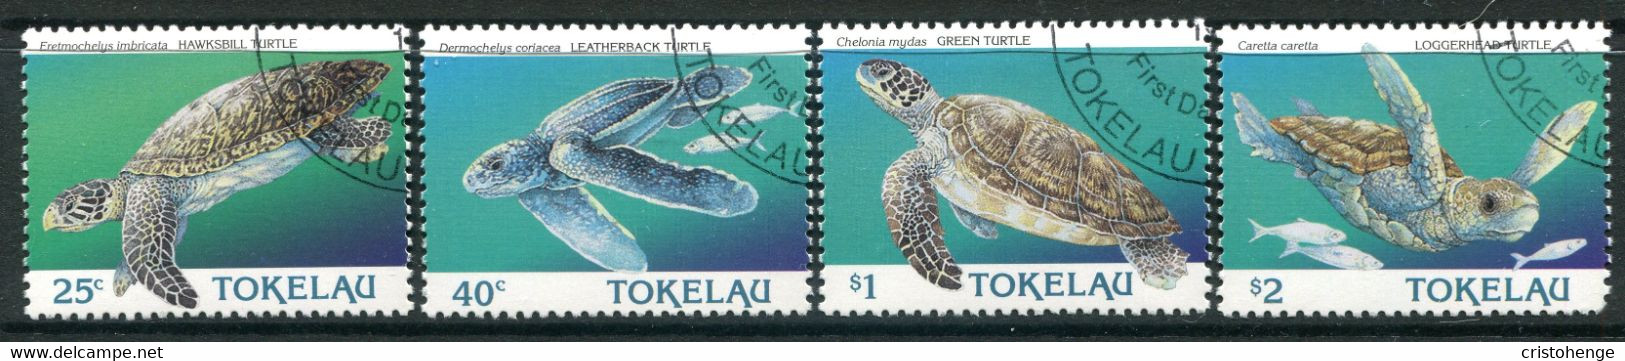 Tokelau 1995 Year Of The Sea Turtle Set CTO Used (SG 234-237) - Tokelau